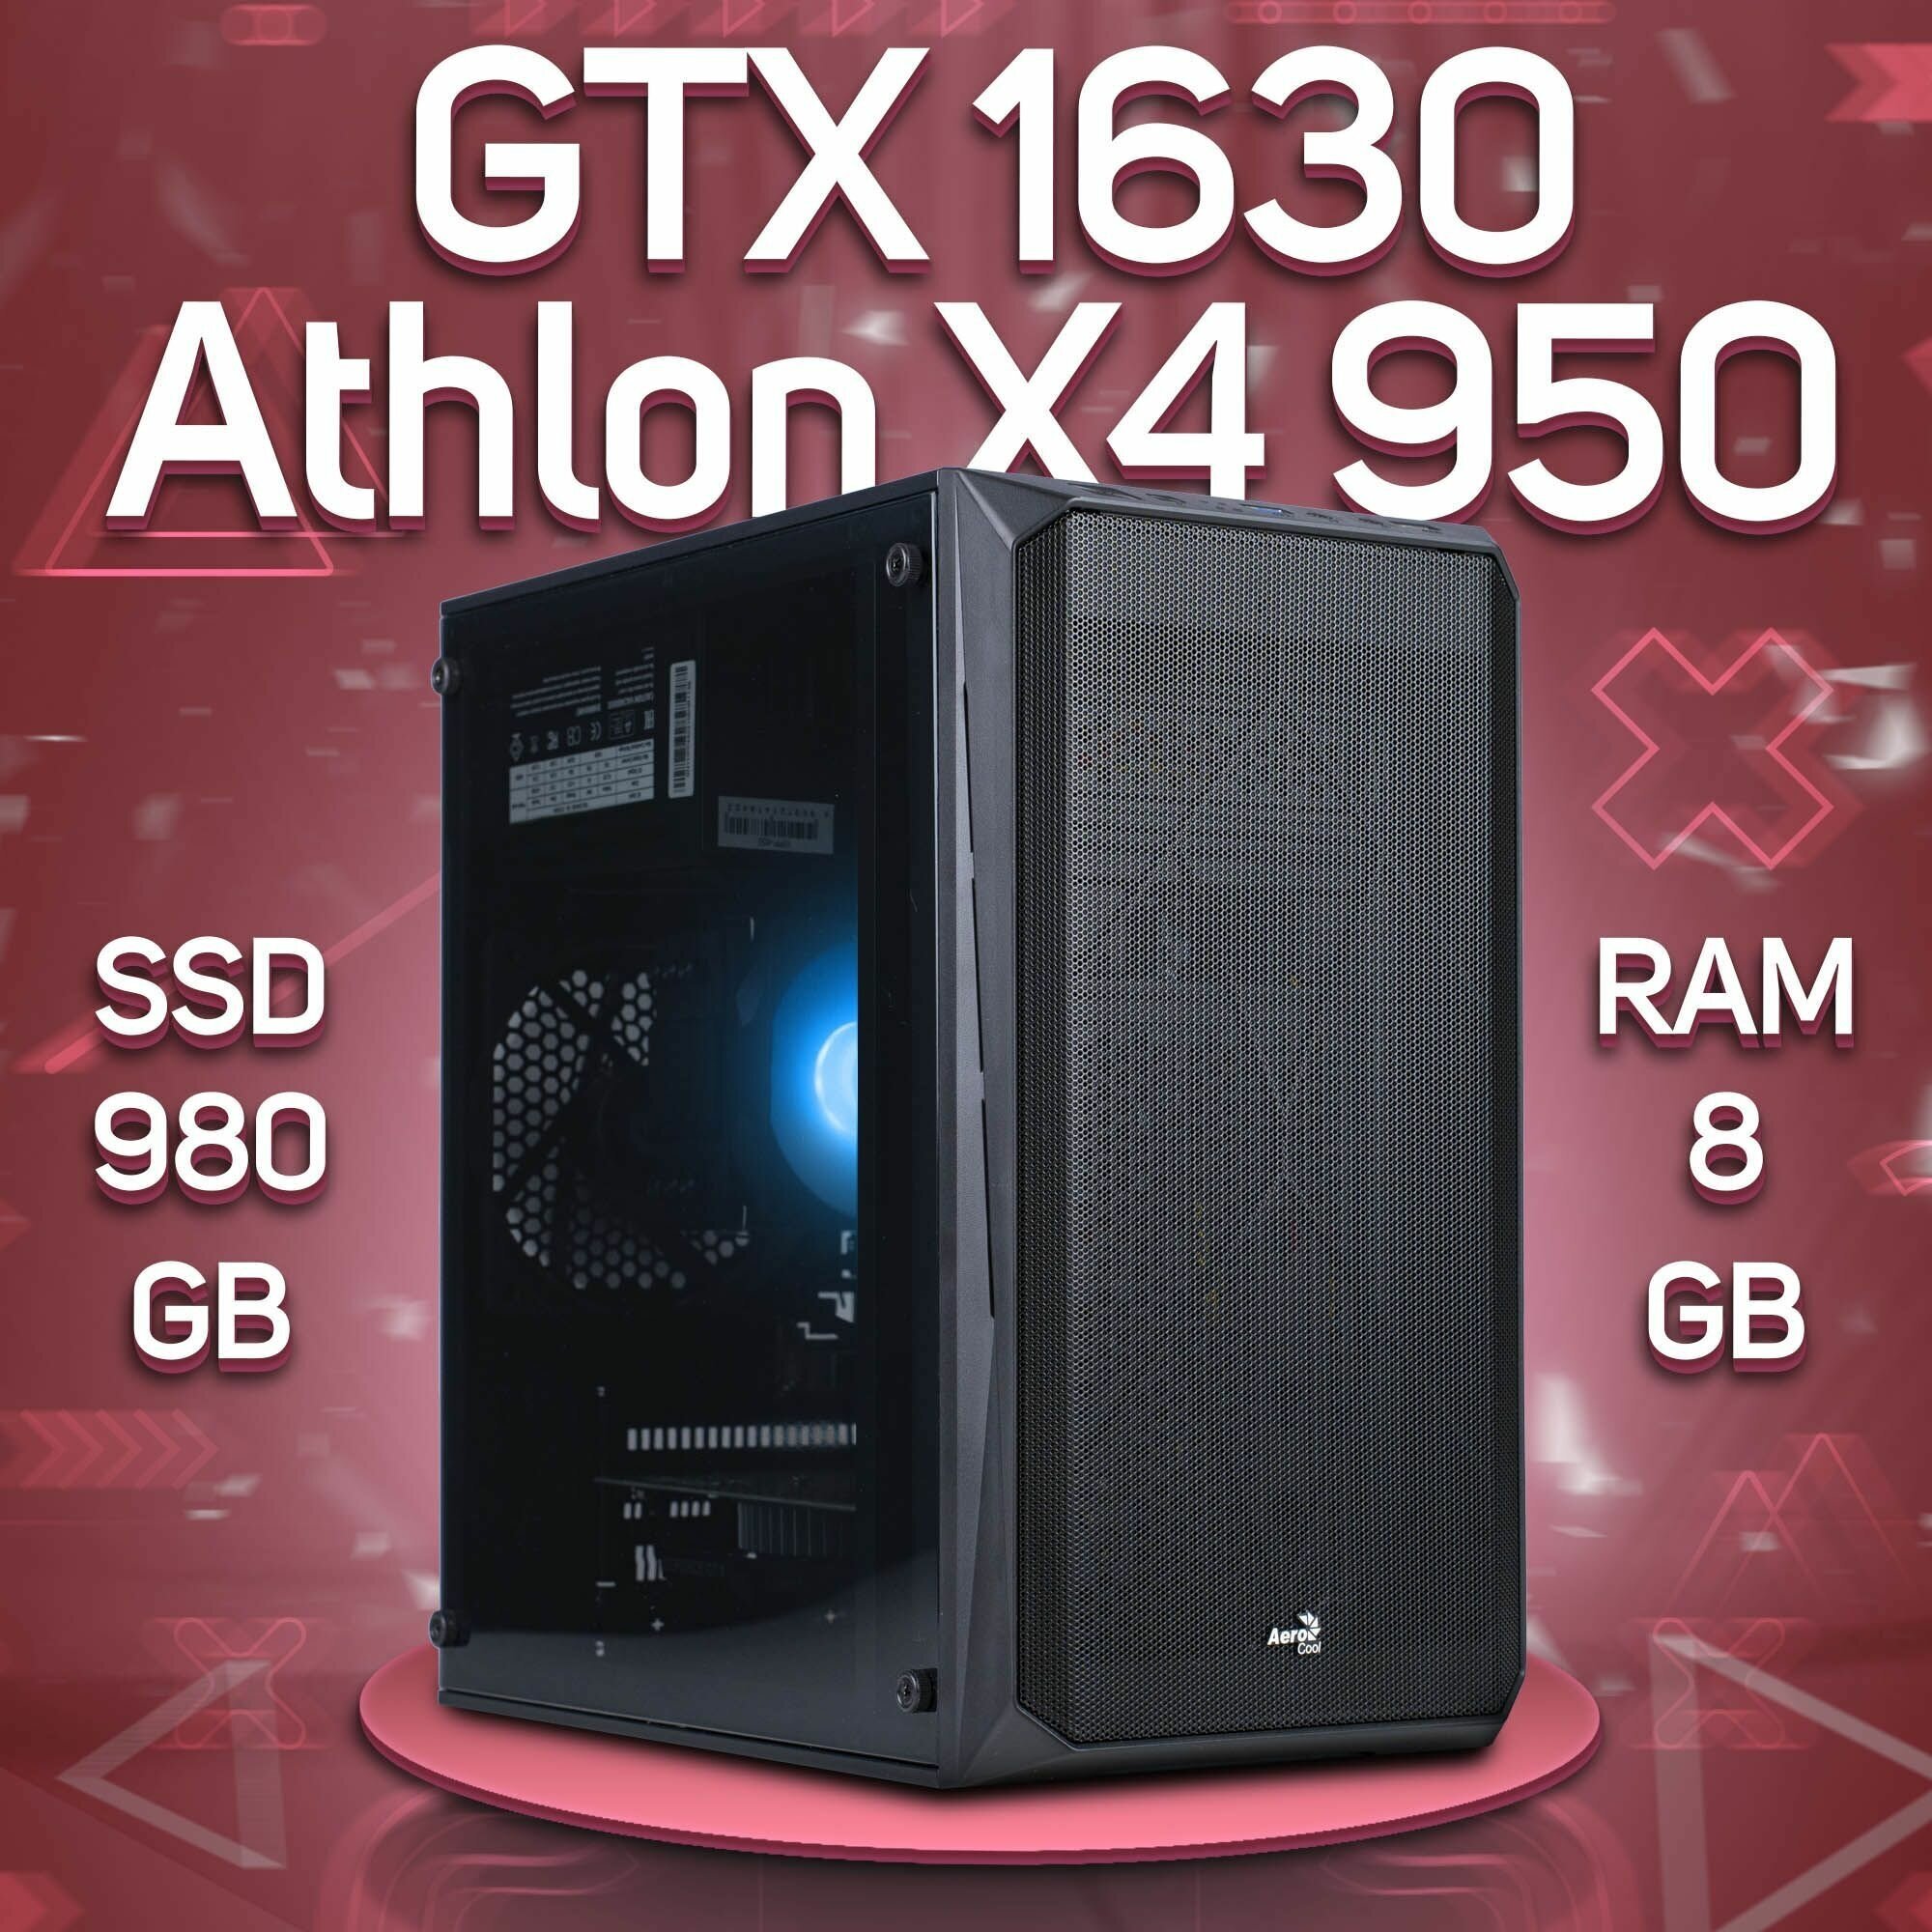 Компьютер AMD Athlon X4 950, NVIDIA GeForce GTX 1630 (4 Гб), DDR4 8gb, SSD 980gb